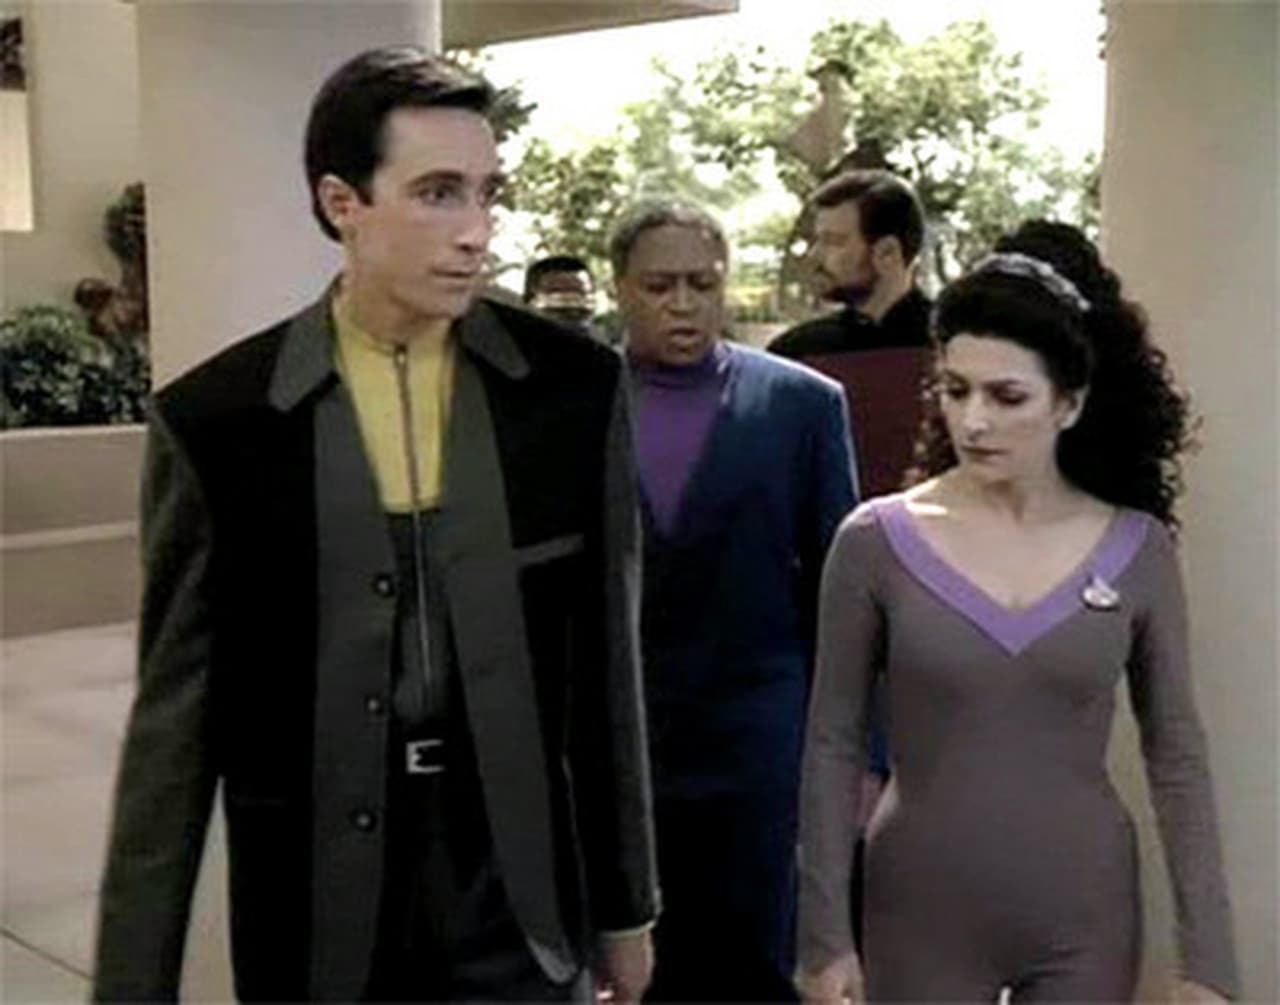 Image Star Trek: La nueva generación